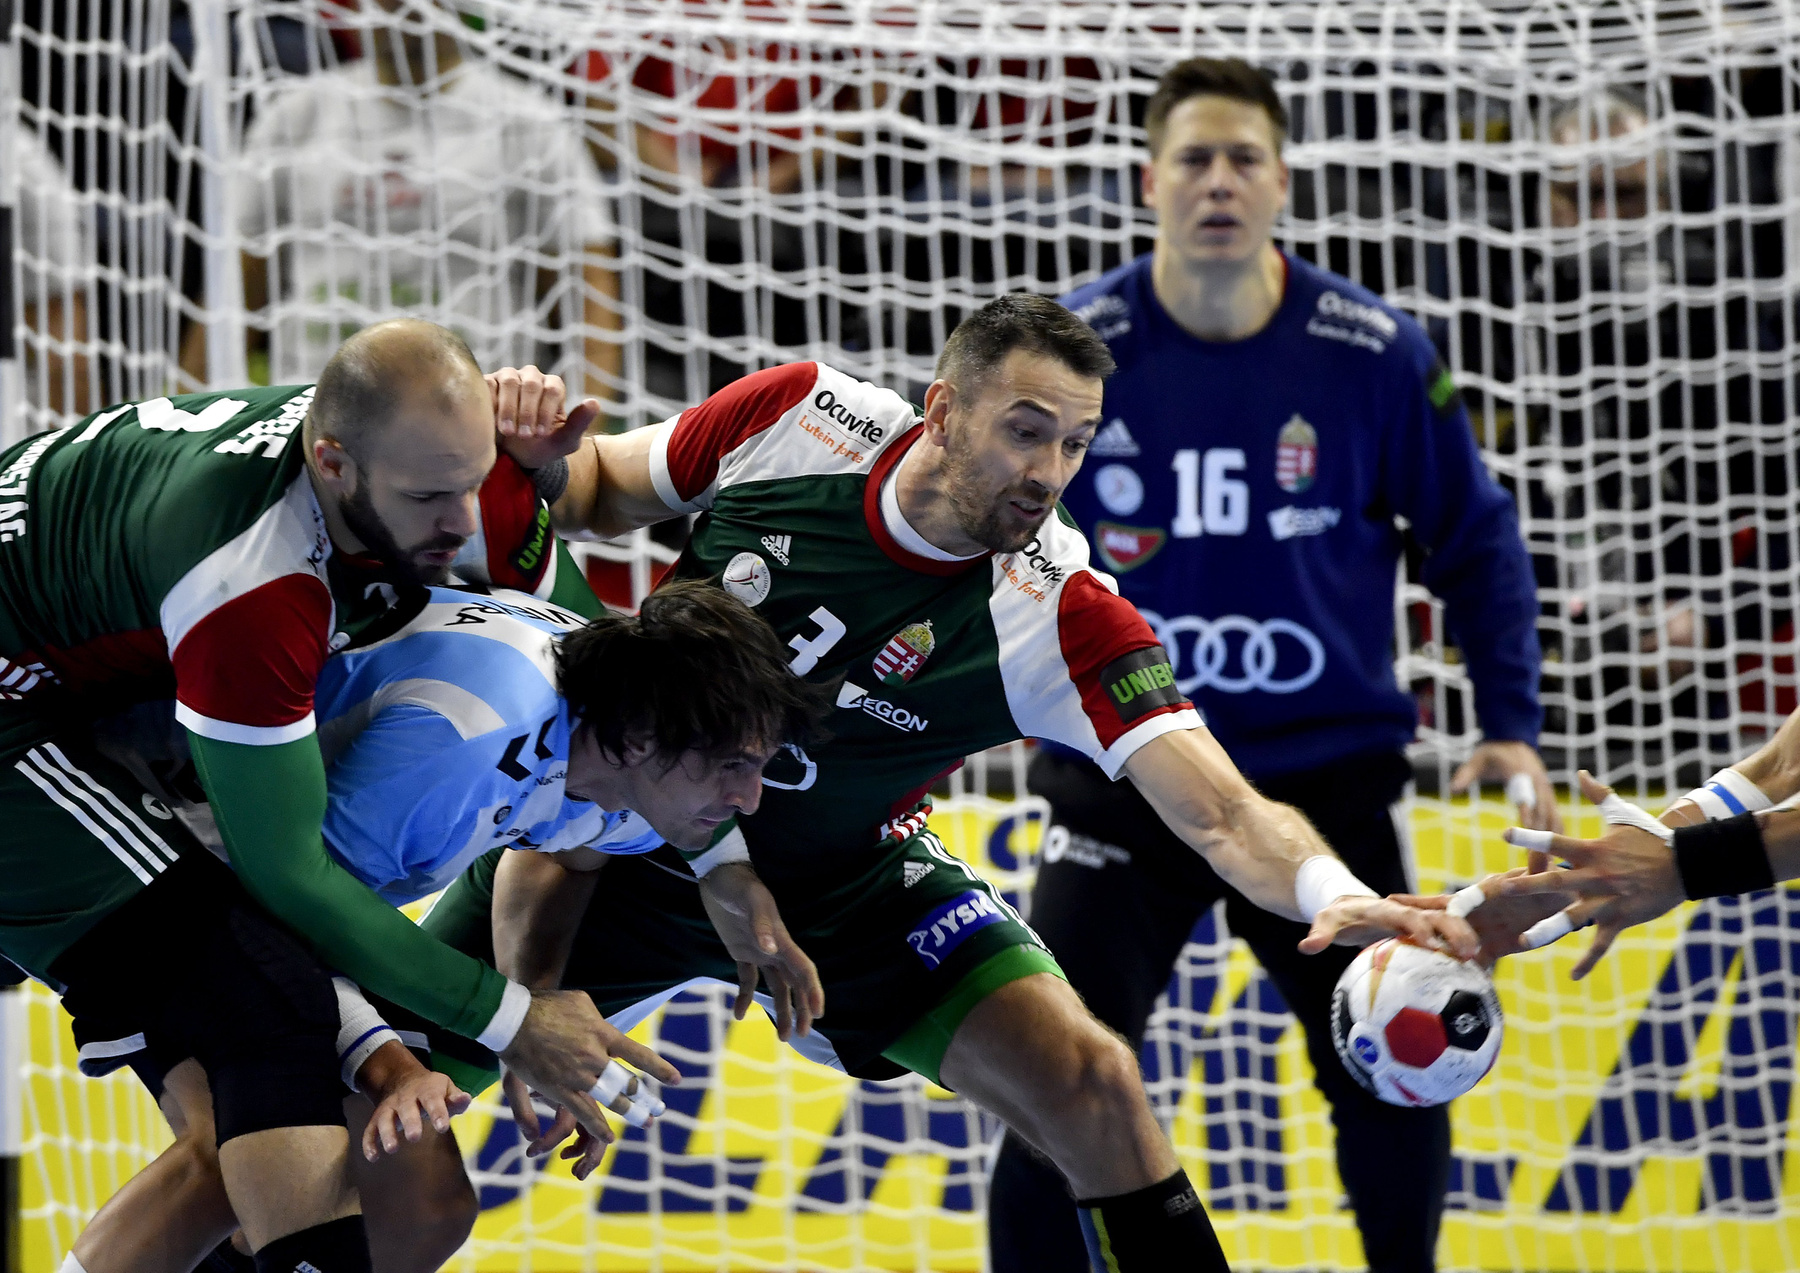 A magyar válogatott játékosai a német-dán közös rendezésû férfi kézilabda-világbajnokság csoportkörének 1. fordulójában játszott Magyarország - Argentína mérkõzés végén